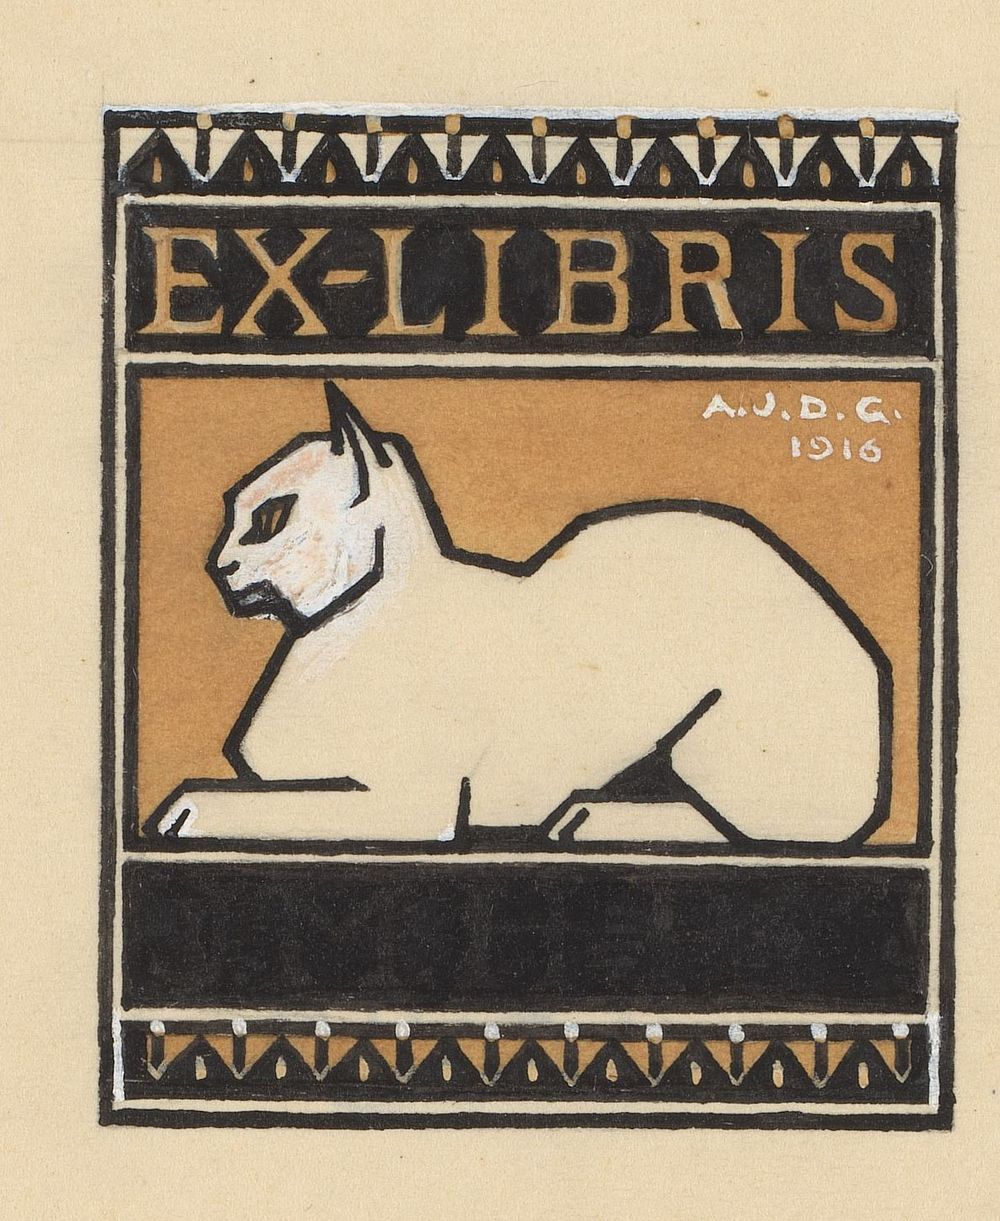 Ontwerp voor een ex libris met een liggende kat (1916) by Julie de Graag